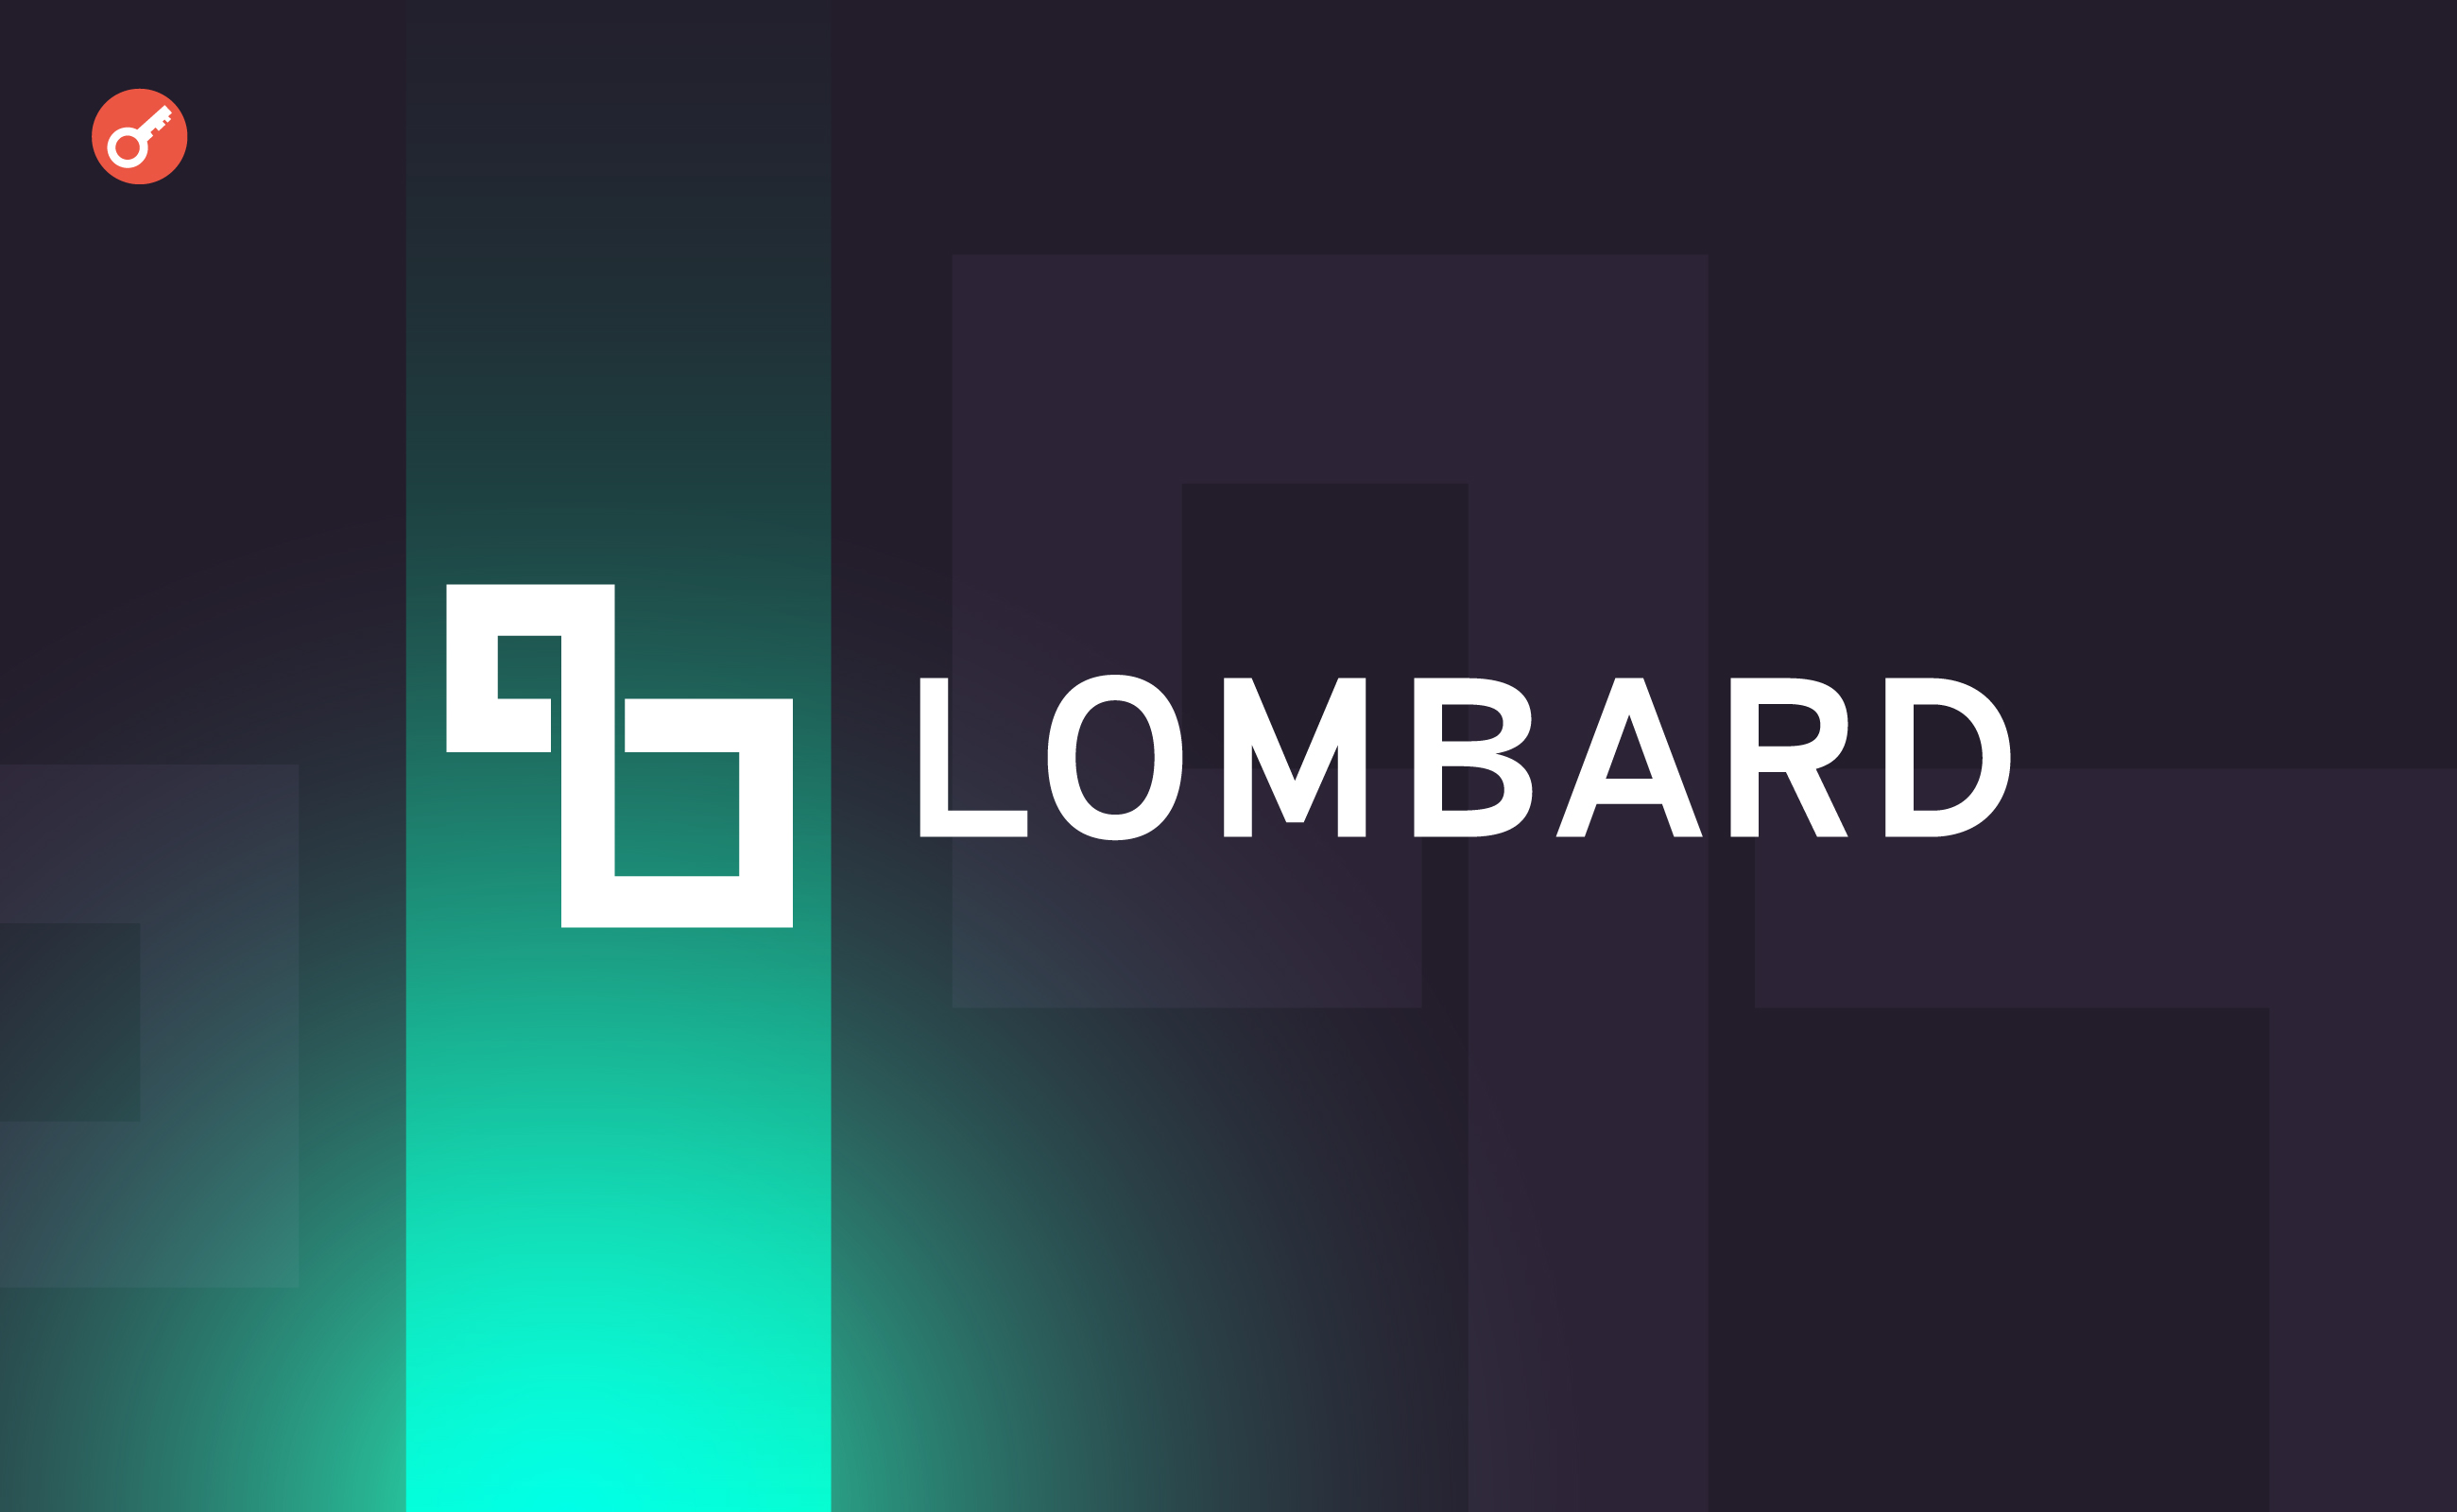 Protokół restakingu bitcoinów firmy Lombard otrzymuje 16 milionów dolarów inwestycji. Główny kolaż wiadomości.